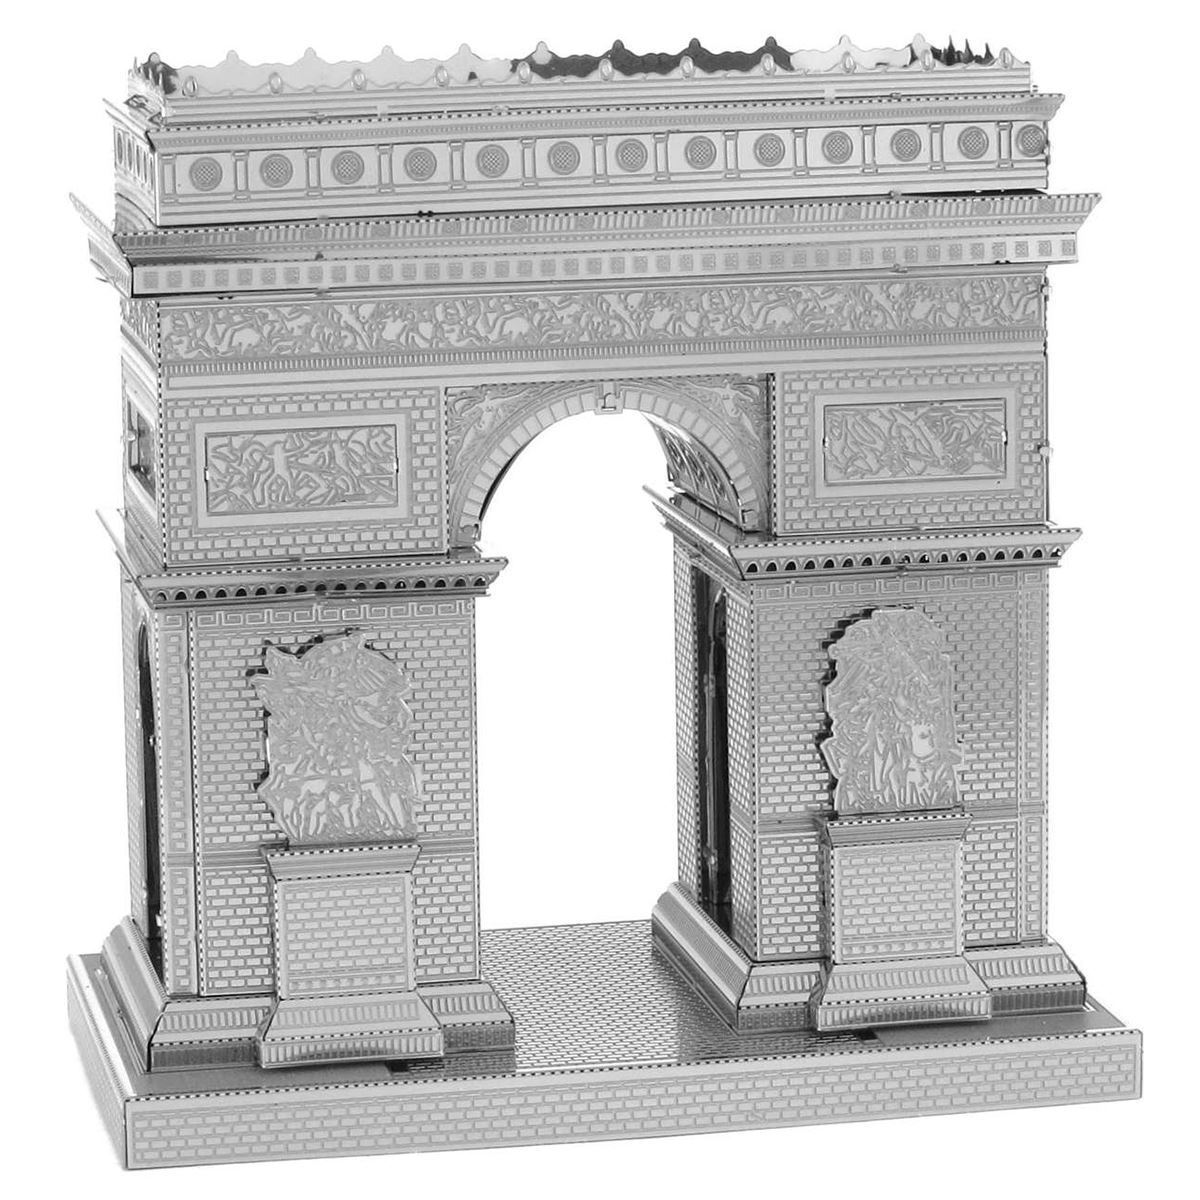 Puzzle Triumphal arch metal 3D